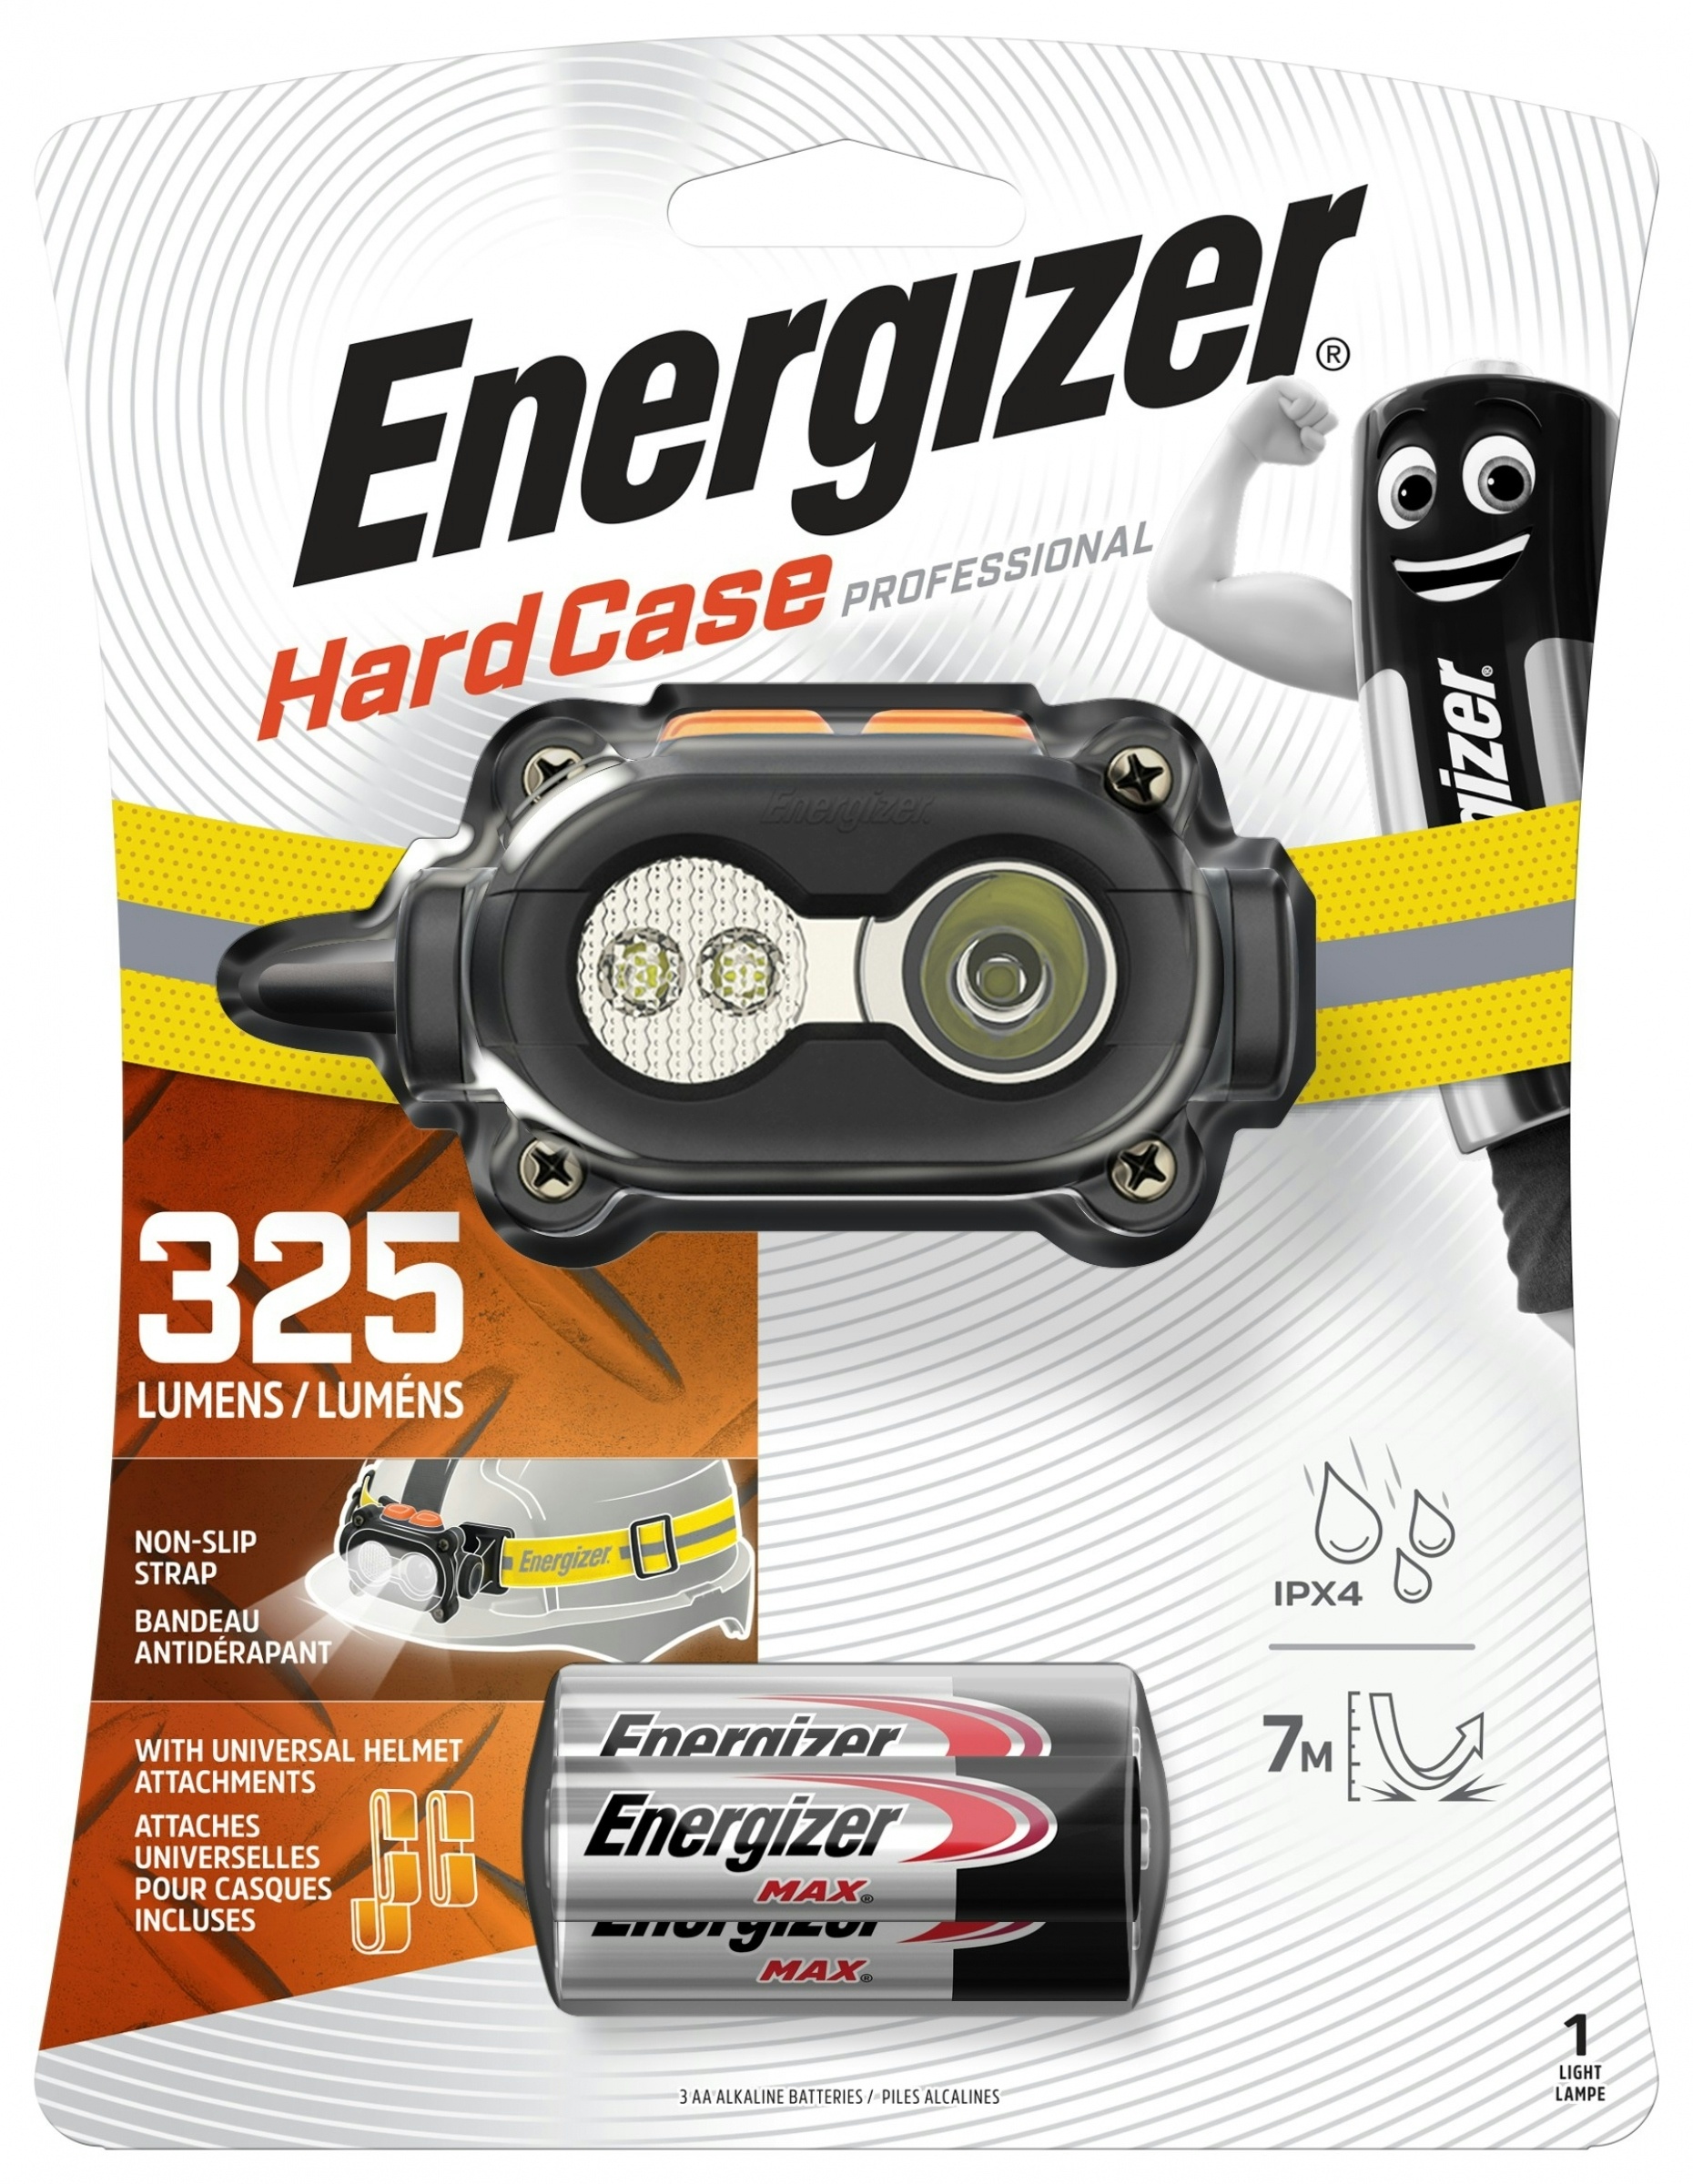 Energizer Hardcase LED Headlight 325 Lumen